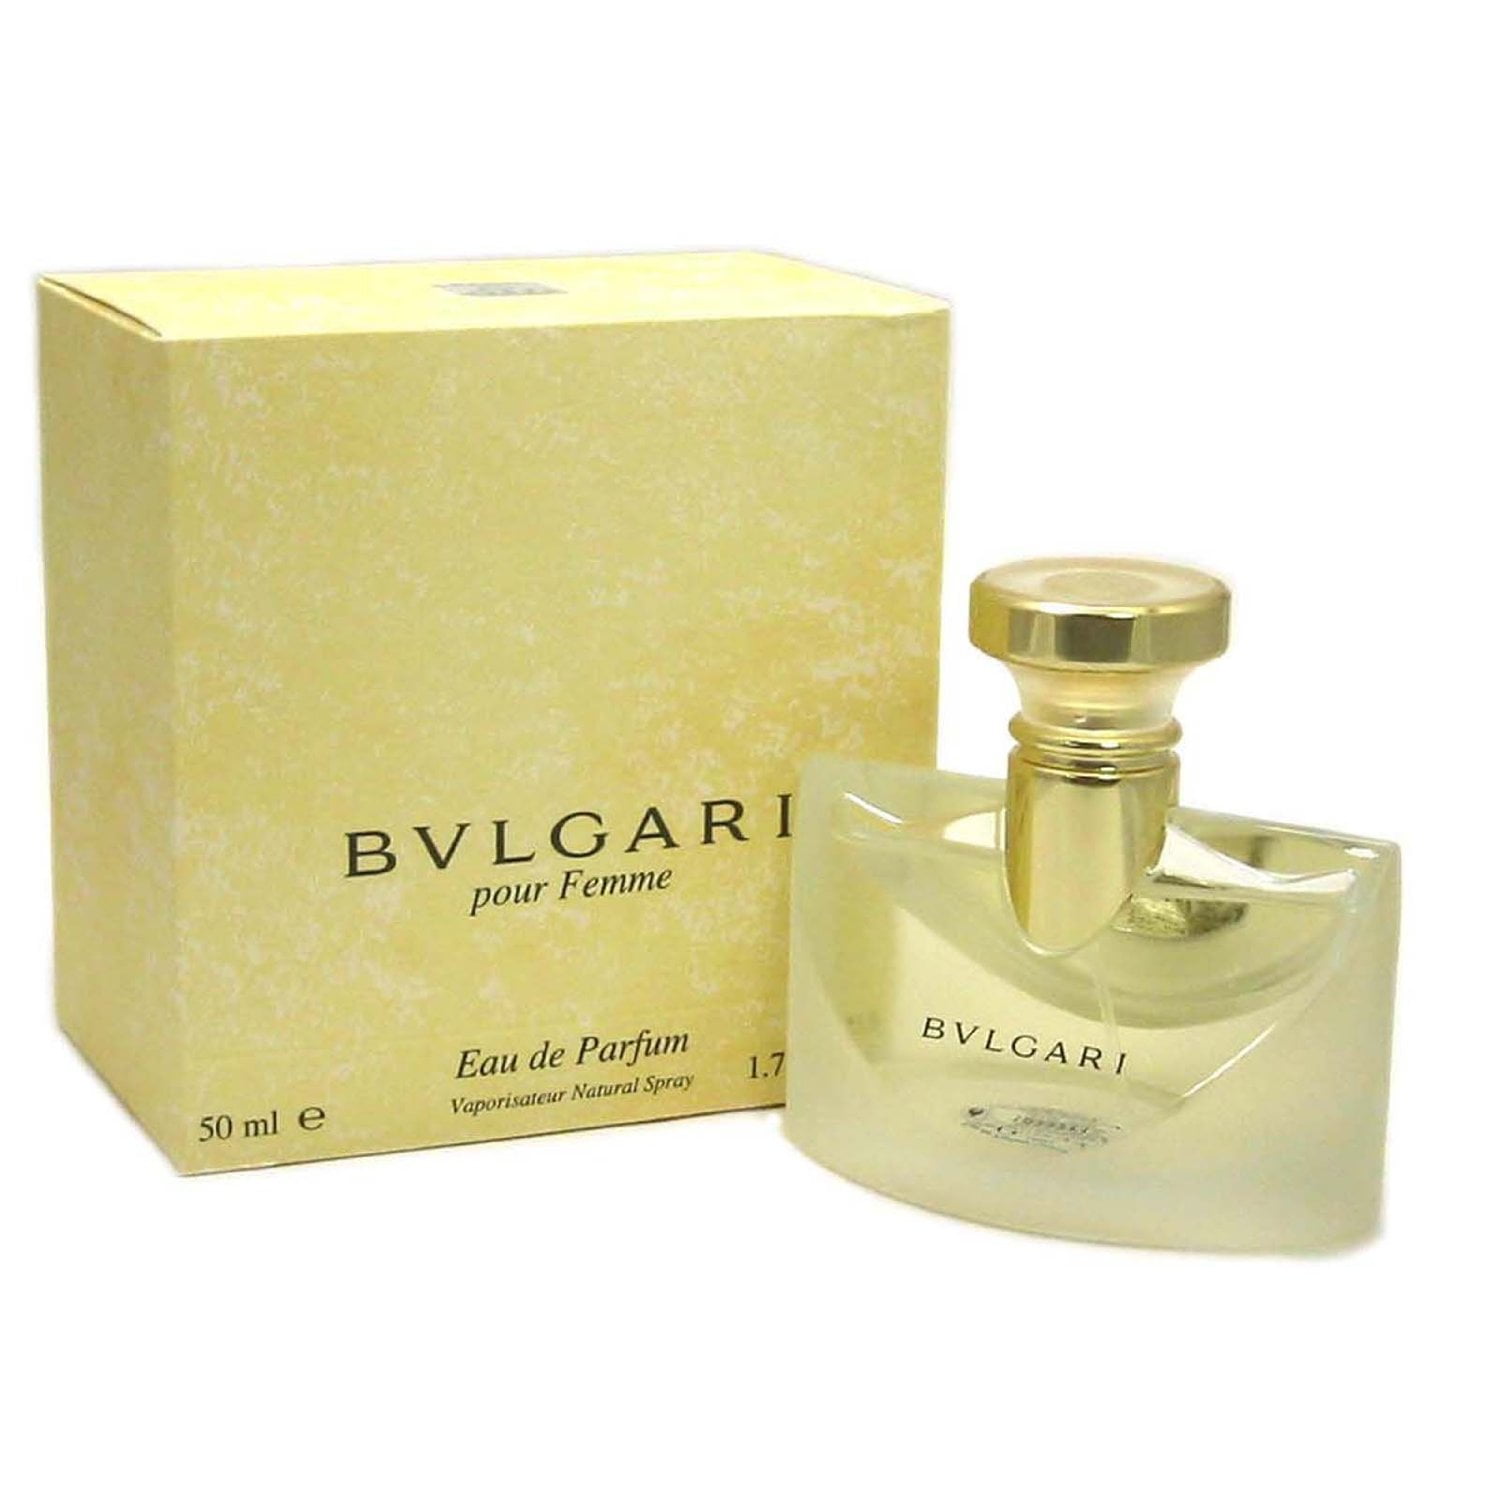 bvlgari pour femme perfume